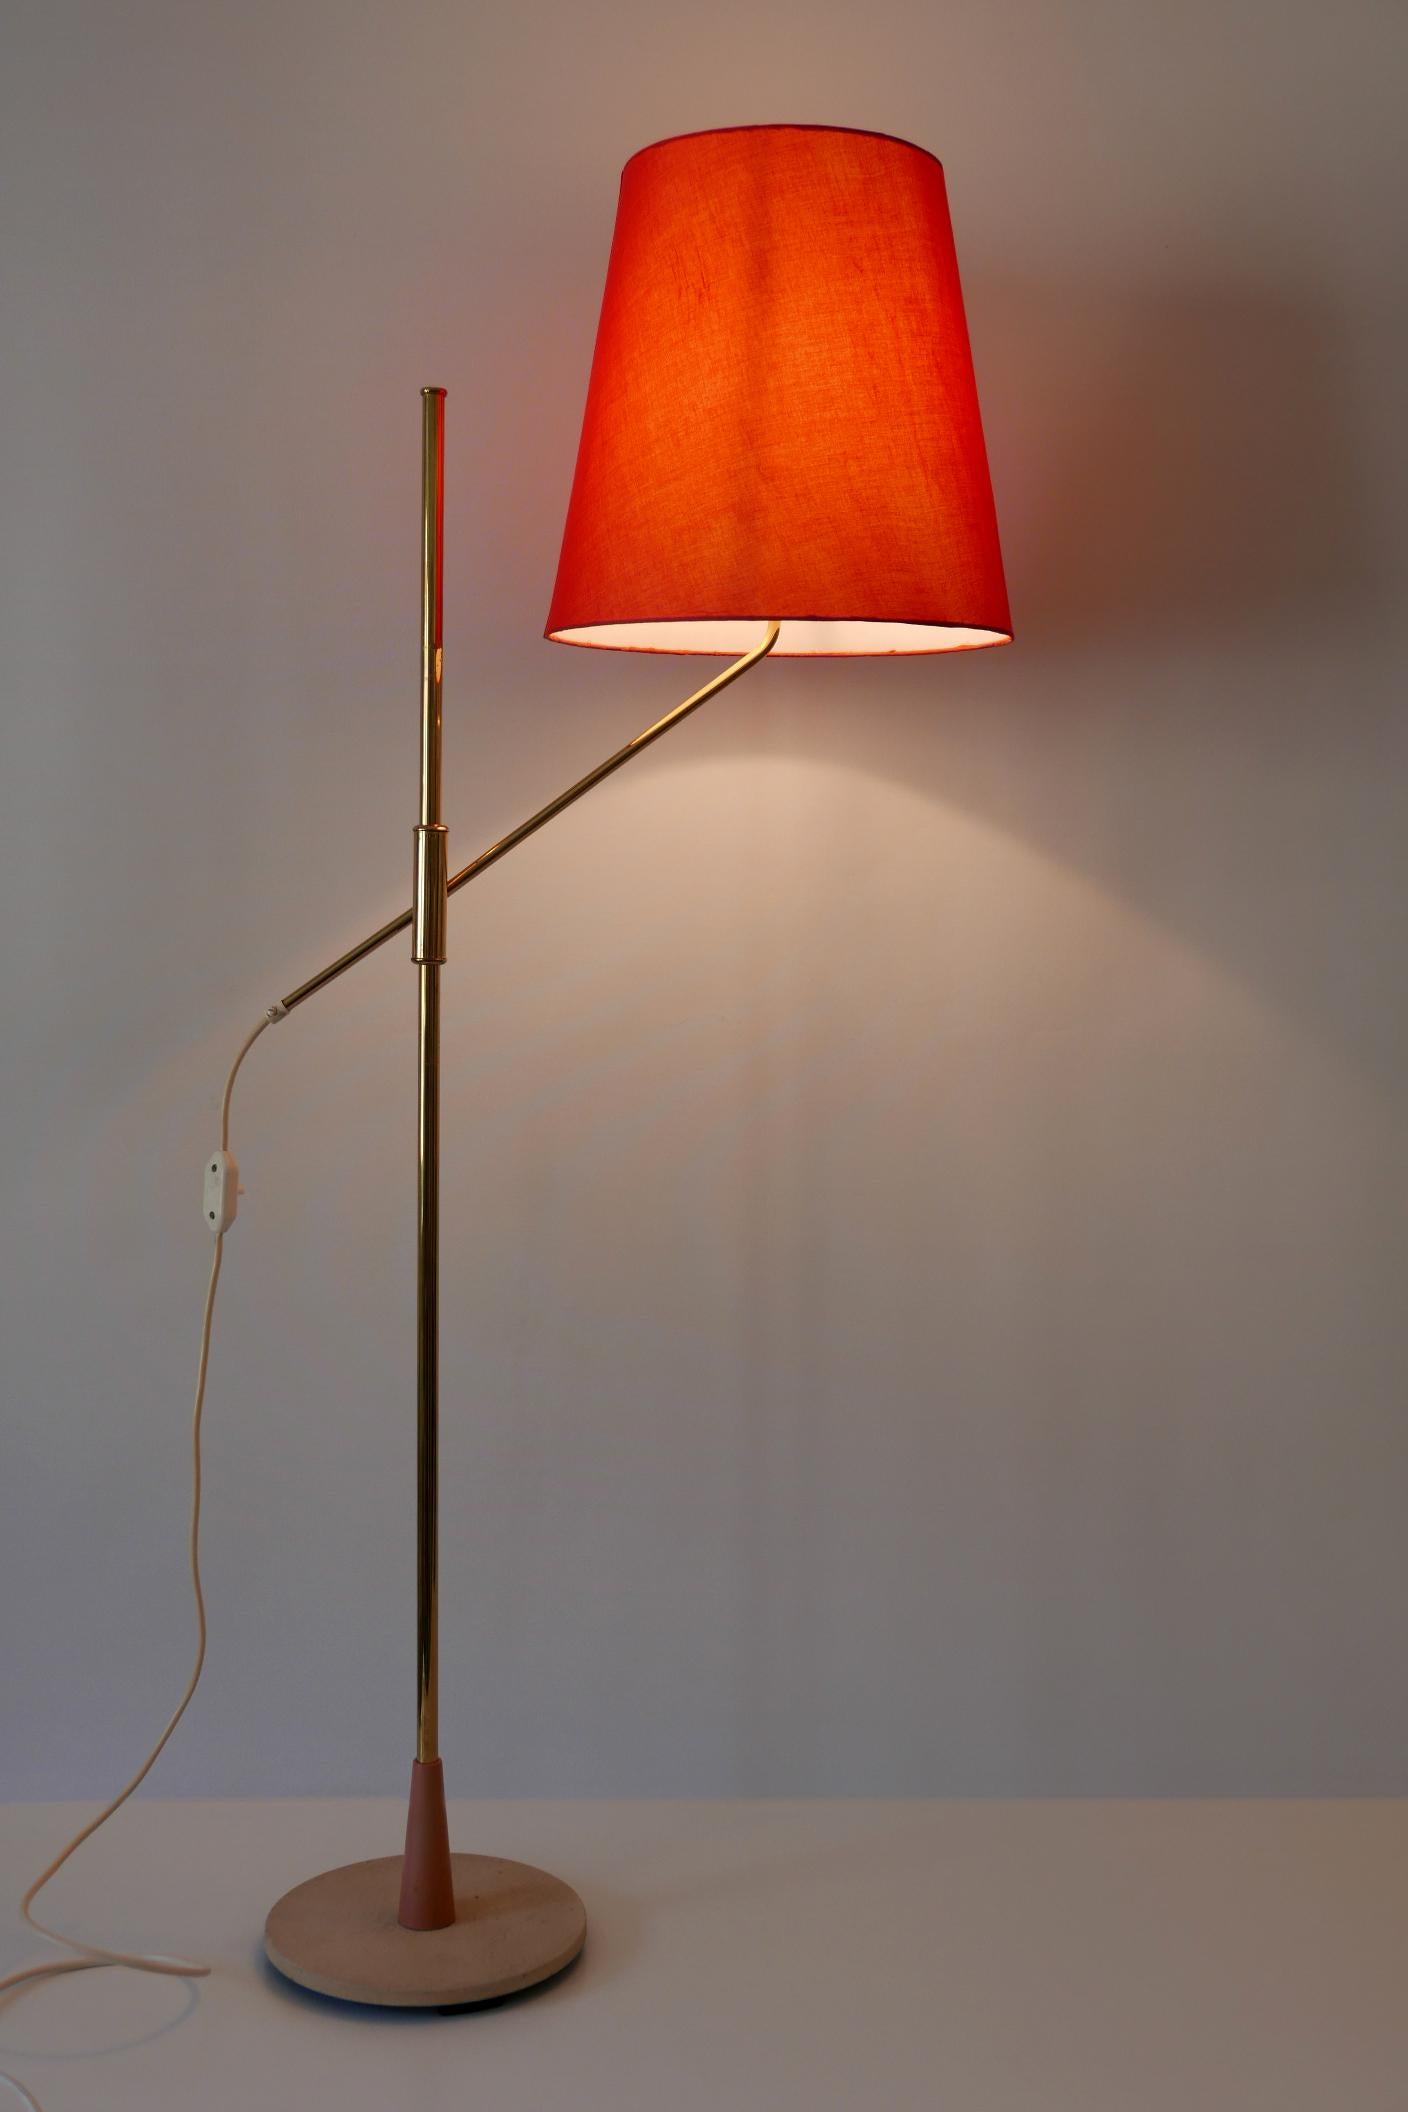 Elegant lampadaire Mid-Century Modern à hauteur réglable. Conçue et fabriquée dans les années 1950, en Allemagne.

Attention : La lampe est livrée sans abat-jour et en état démonté pour un envoi international économique.

Réalisée en laiton, la